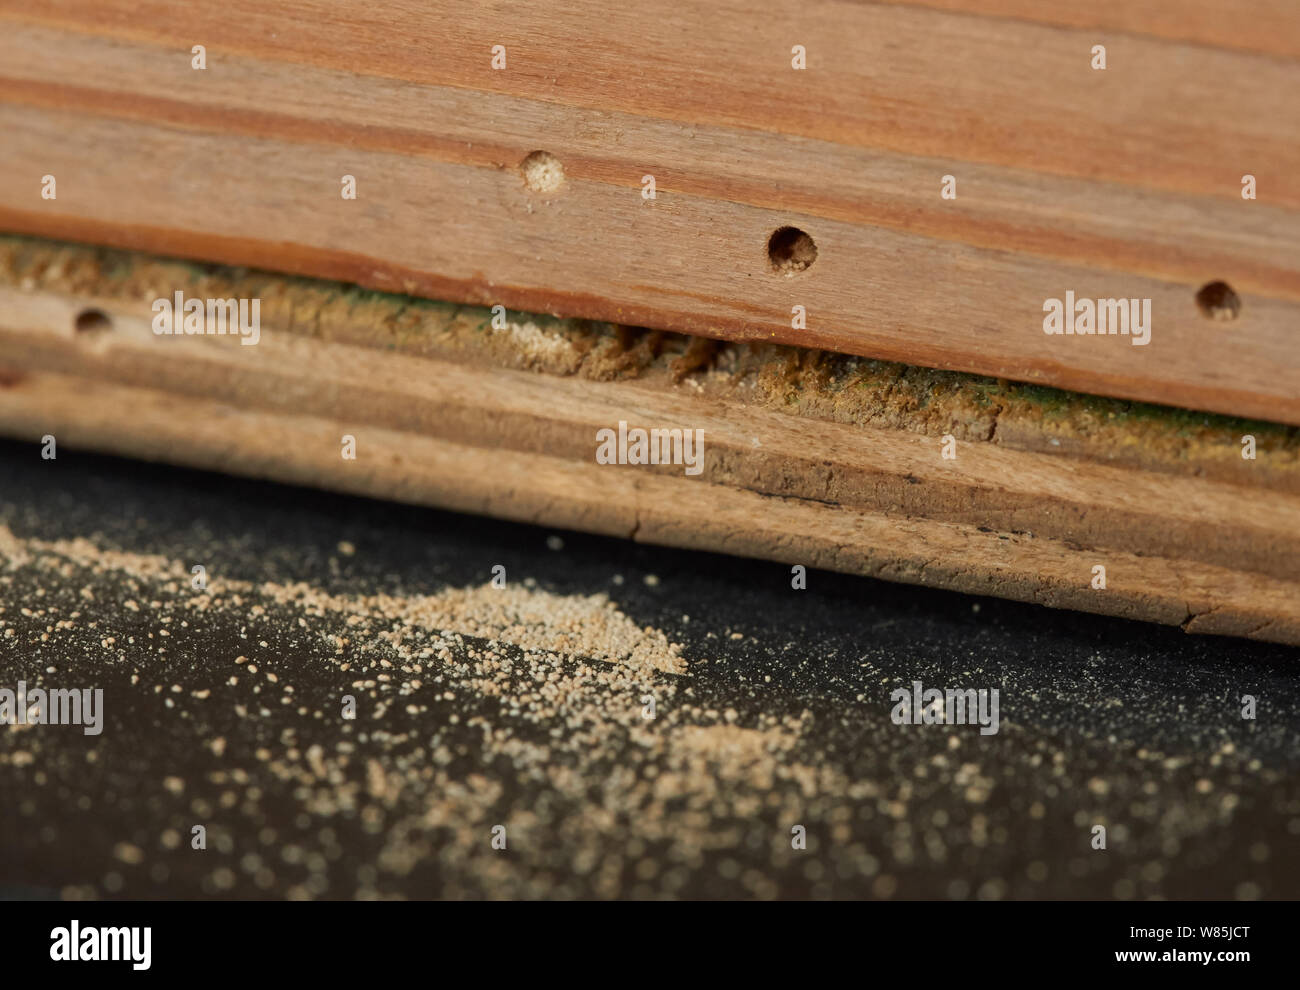 Woodworm Golf Polo ou le mobilier asiatique (Anobium punctatum) trous avec la poussière ou la poudre produite par la larve. Angleterre, Royaume-Uni. En août. Banque D'Images